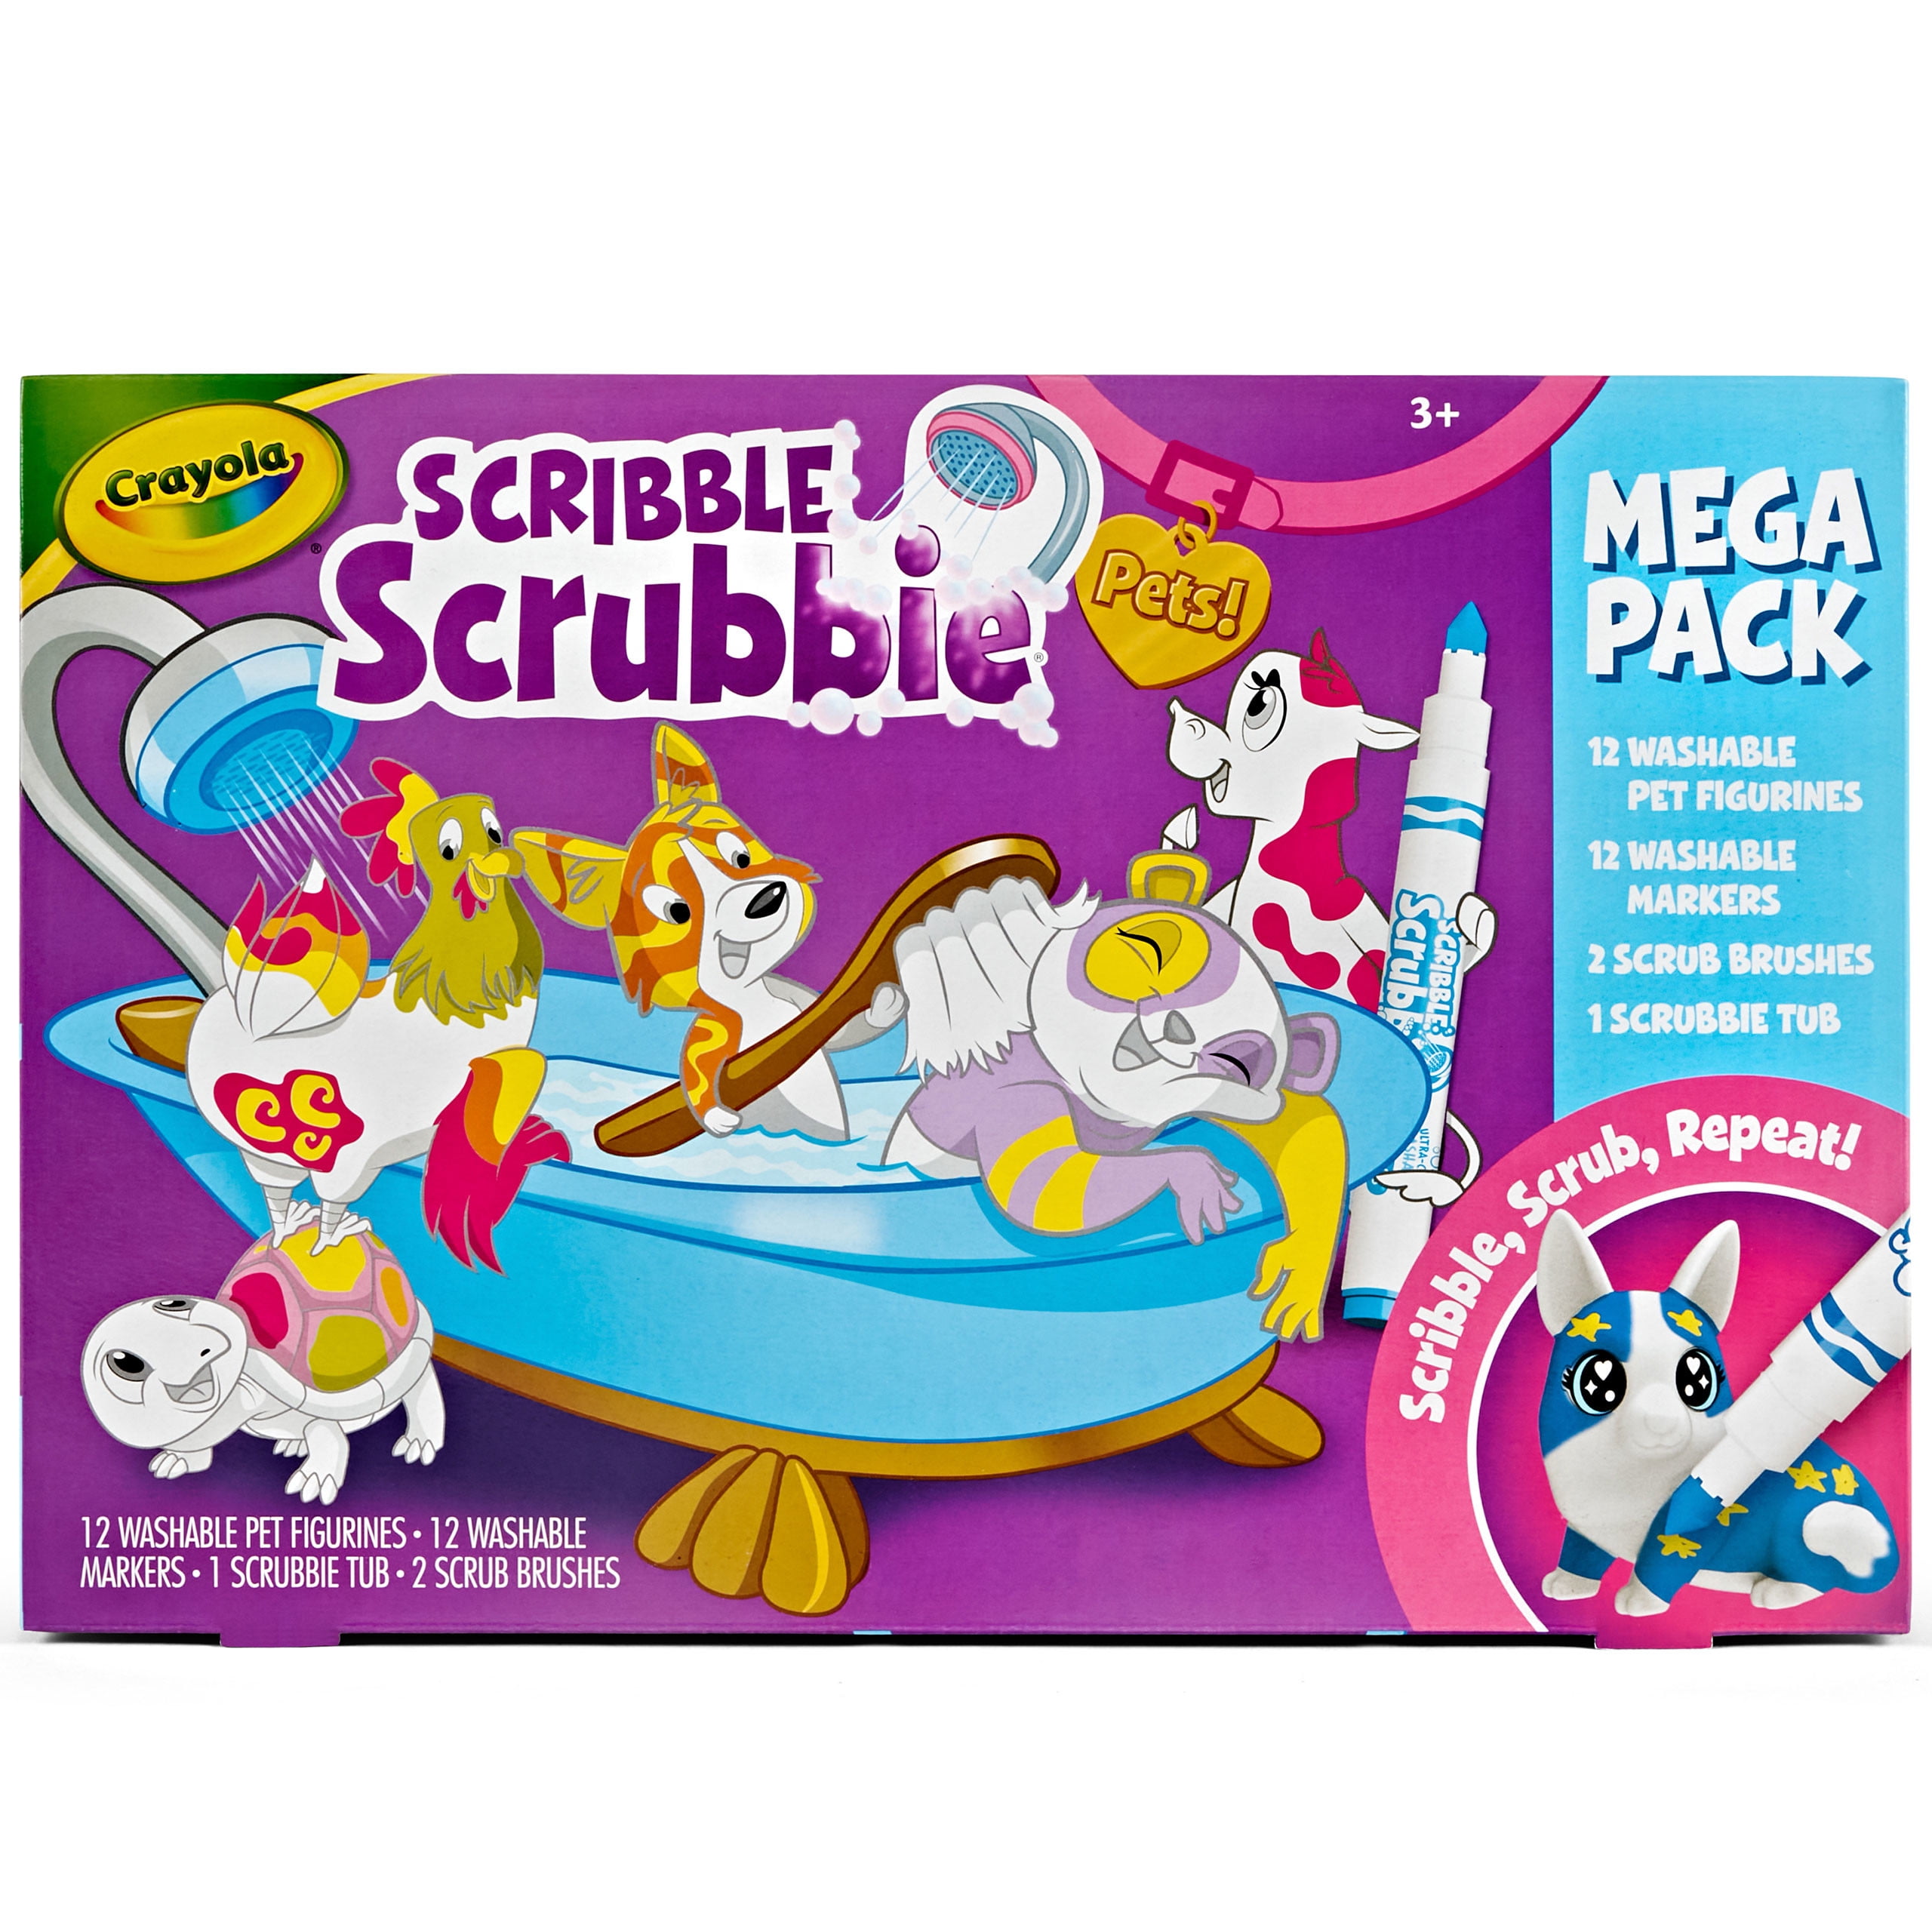 Scribble Scrubbie Pets